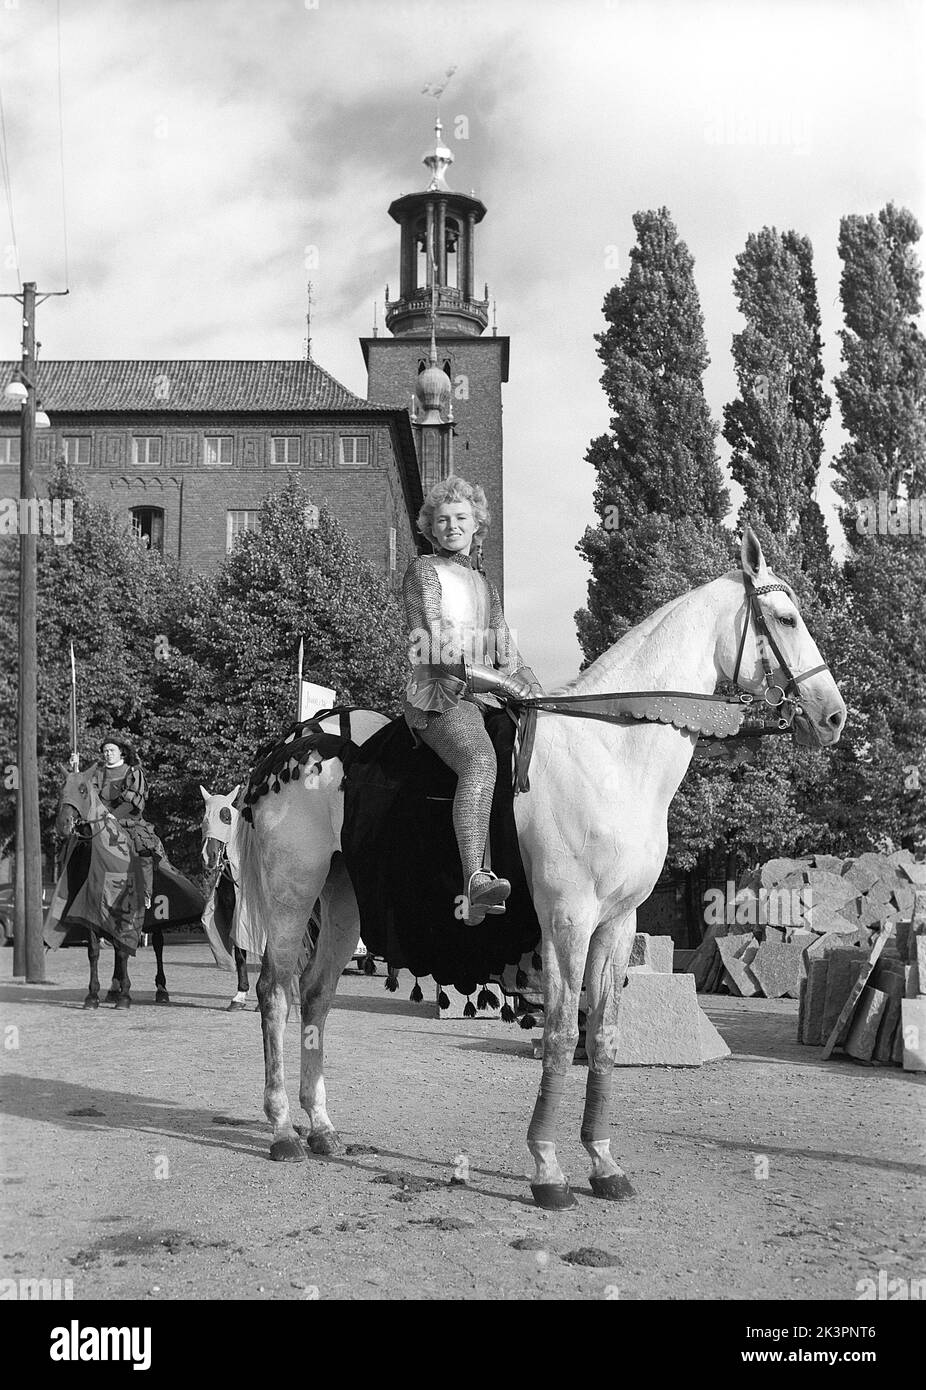 Negli anni '1940s. Il film americano Jeanne d'Arc è stato promosso per la sua prima proiezione e Kerstin Bergo è stato scelto per agire come Ingrid Bergman nel pr-stunt. Sembrava un po' Ingrid Bergman e poteva cavalcare. Sullo sfondo del municipio di Stoccolma. Stoccolma Svezia 1949. Kristoffersson rif AO17-3 Foto Stock